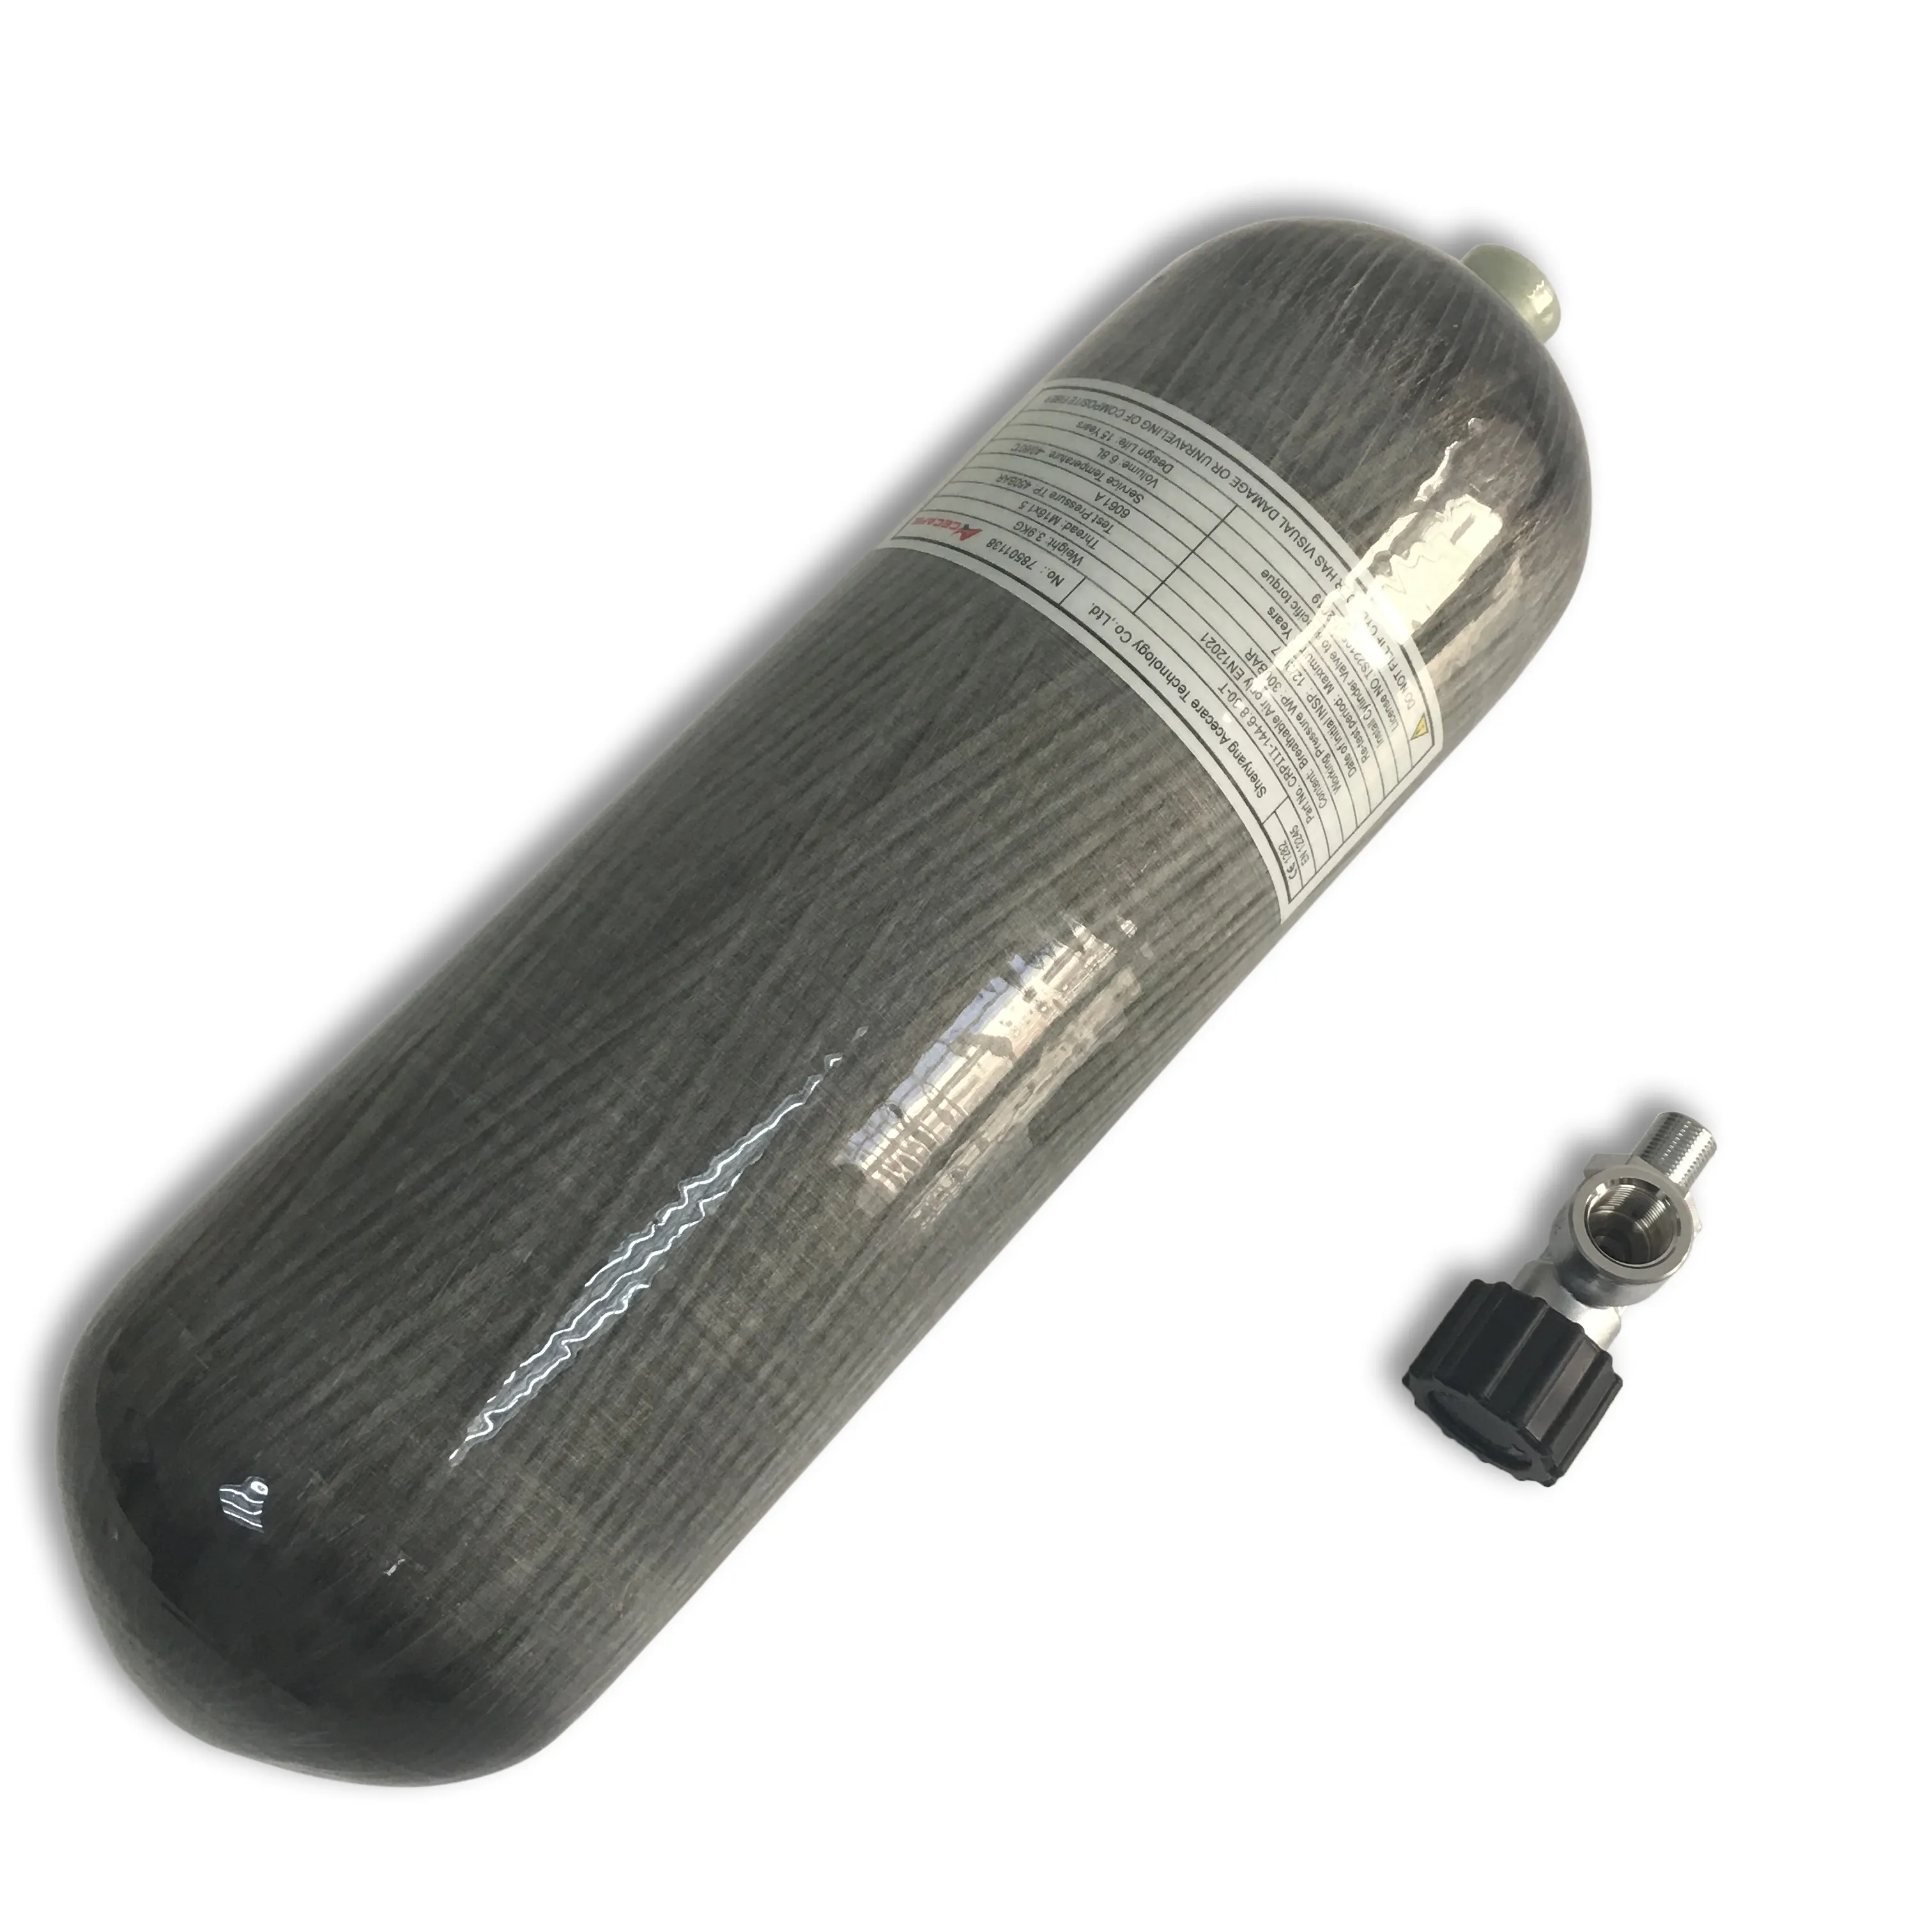 Silinder serat karbon kapasitas 6.8L CE 30Mpa digunakan untuk pemadam kebakaran dengan katup